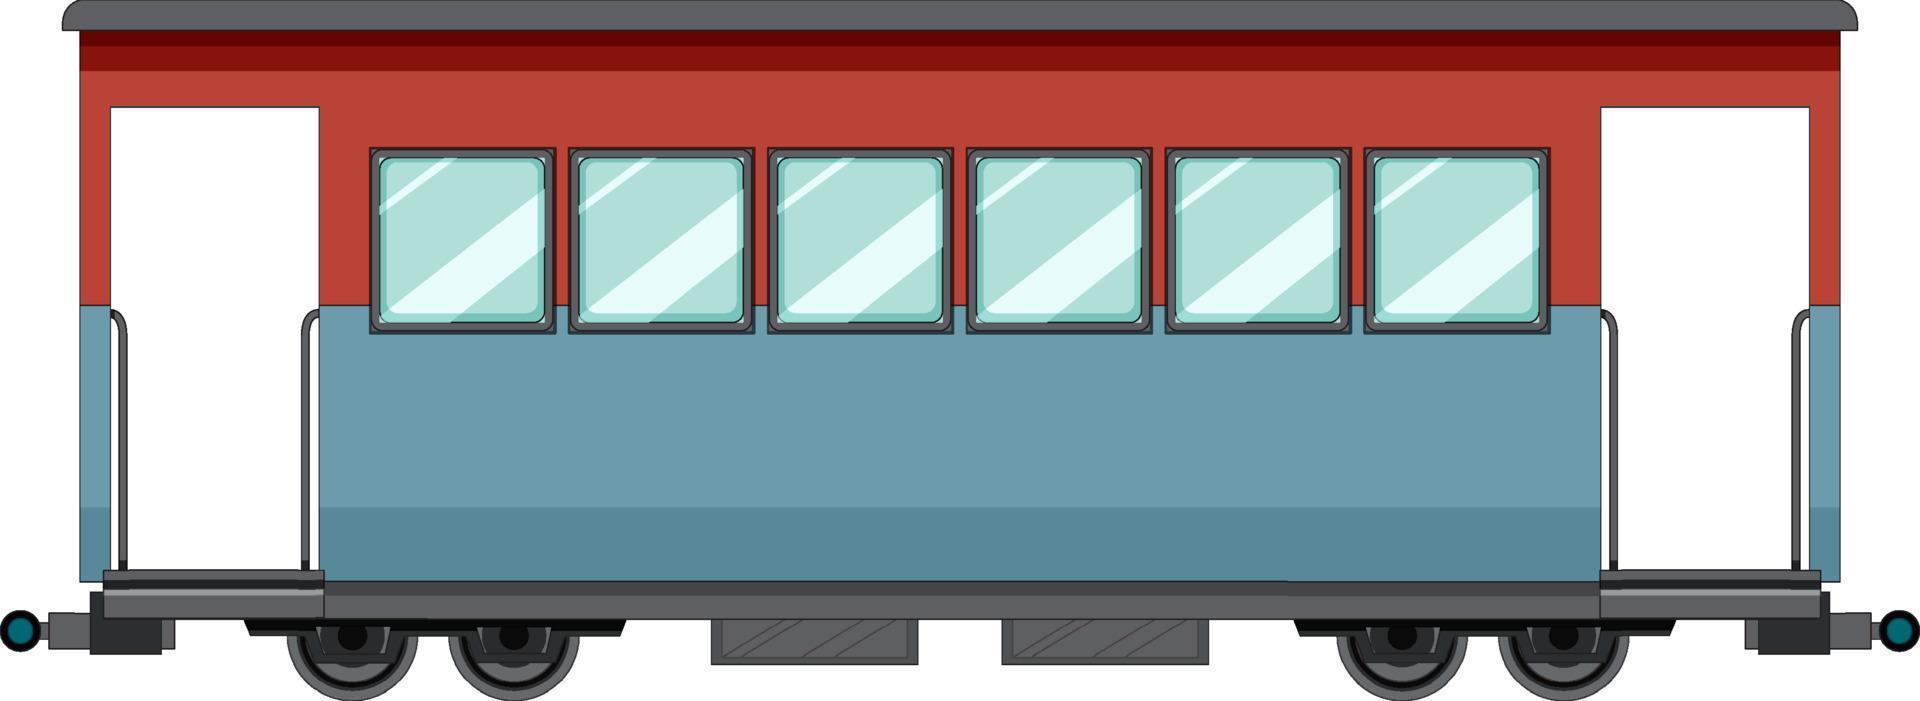 contêiner de carga do trem de carga em fundo branco vetor